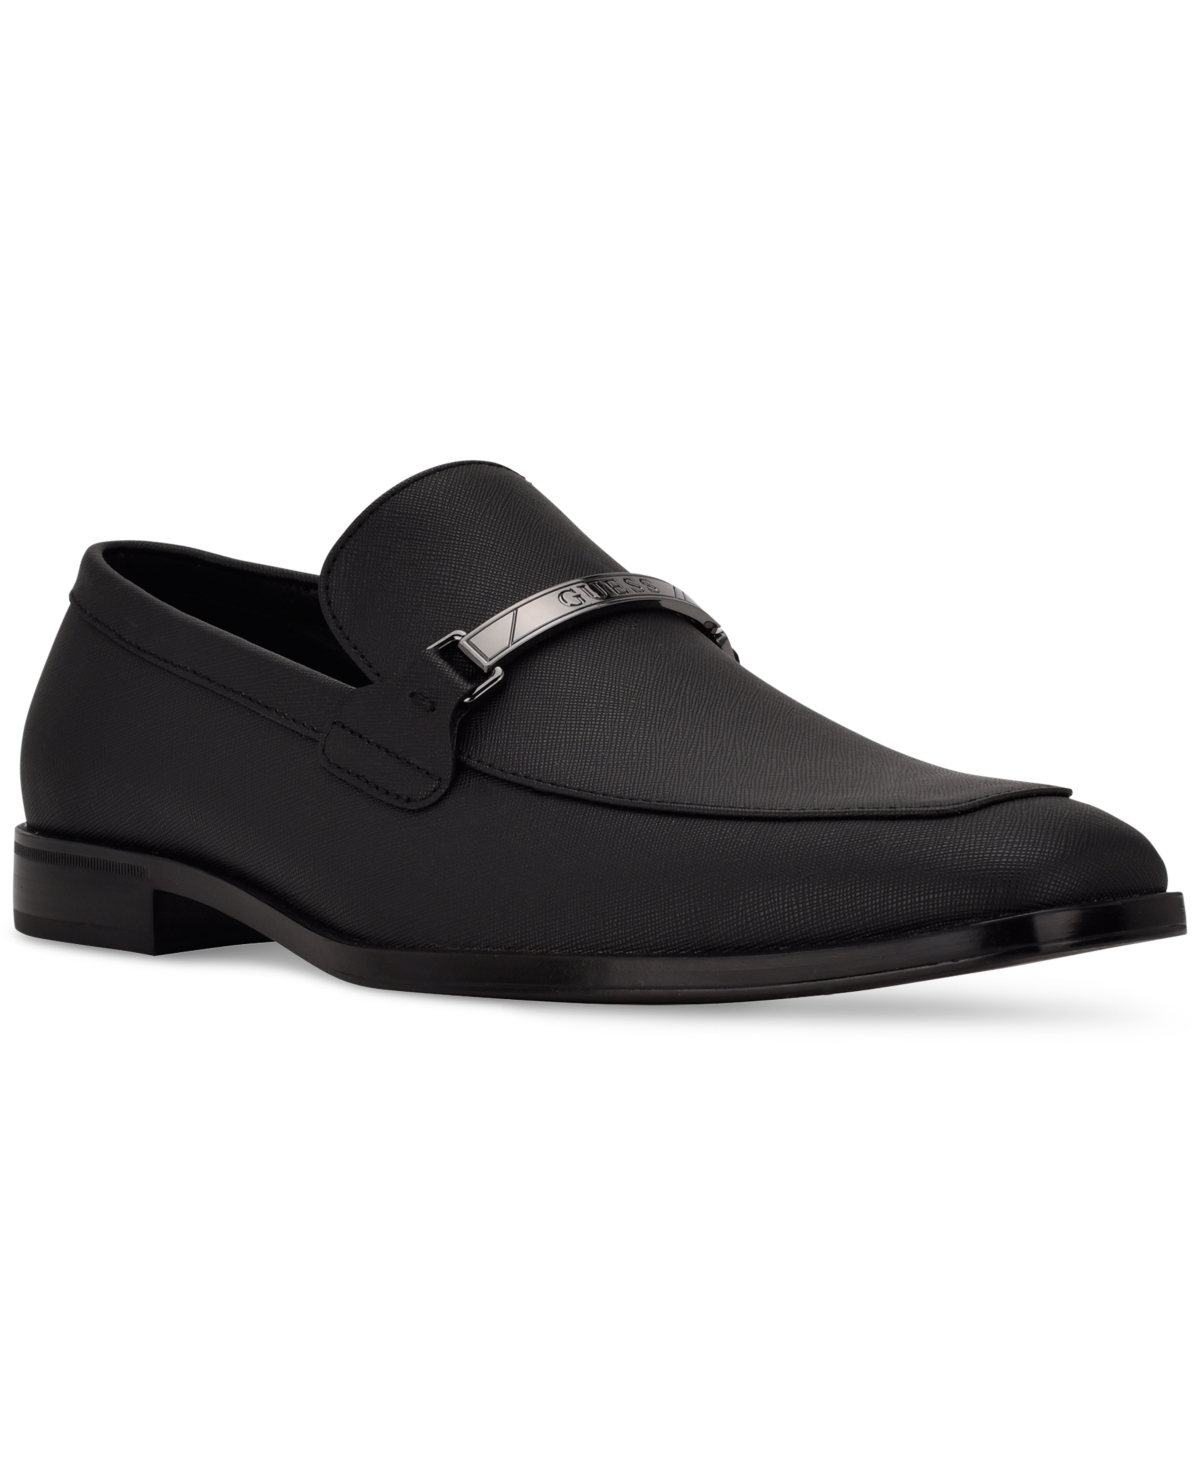 Men's Handy Dress Loafer - Black